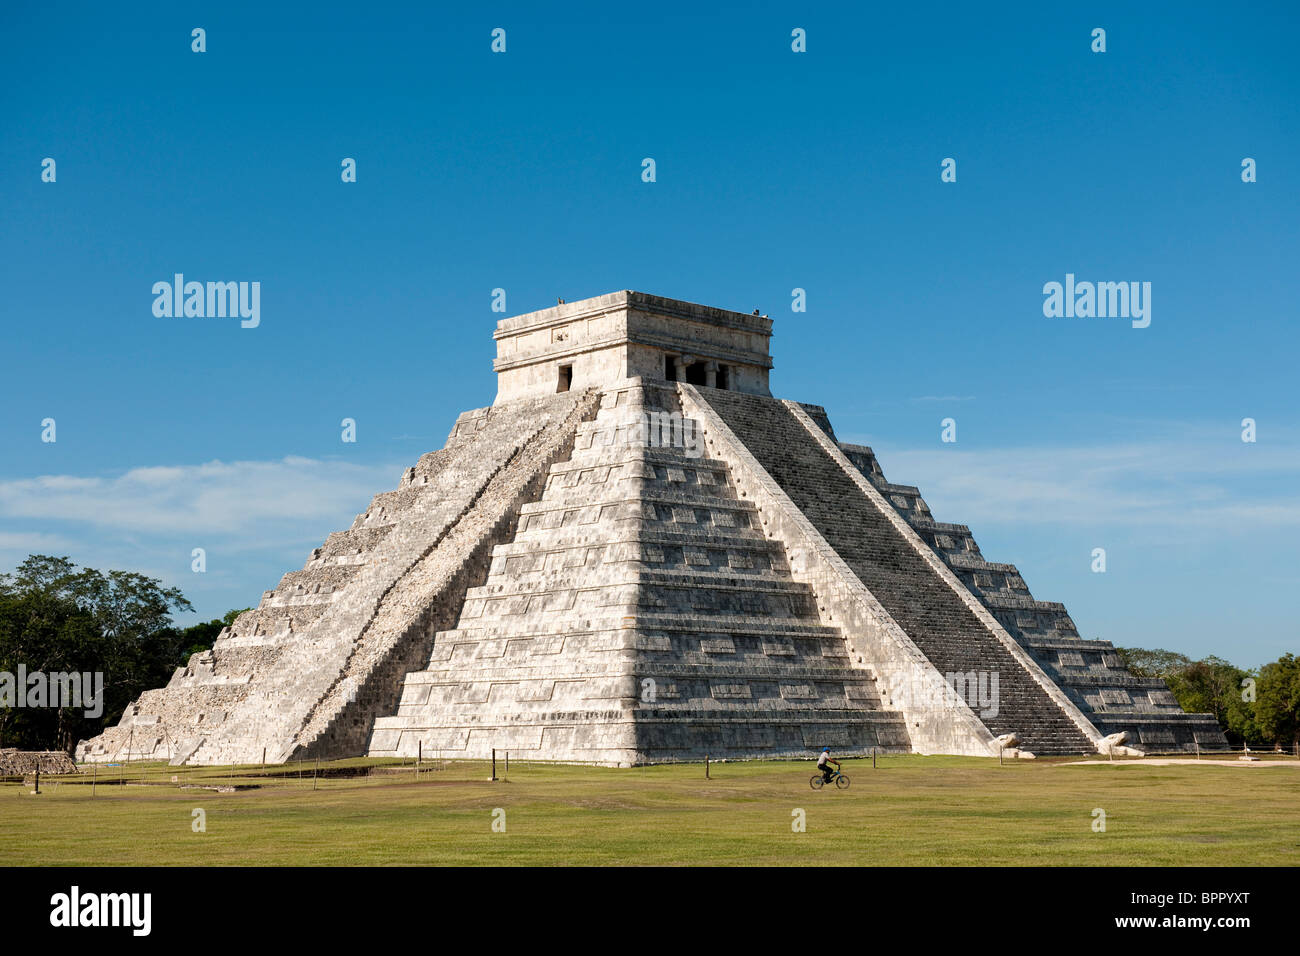 El Castillo, las ruinas de Chichen Itzá, Yucatán, México Foto de stock